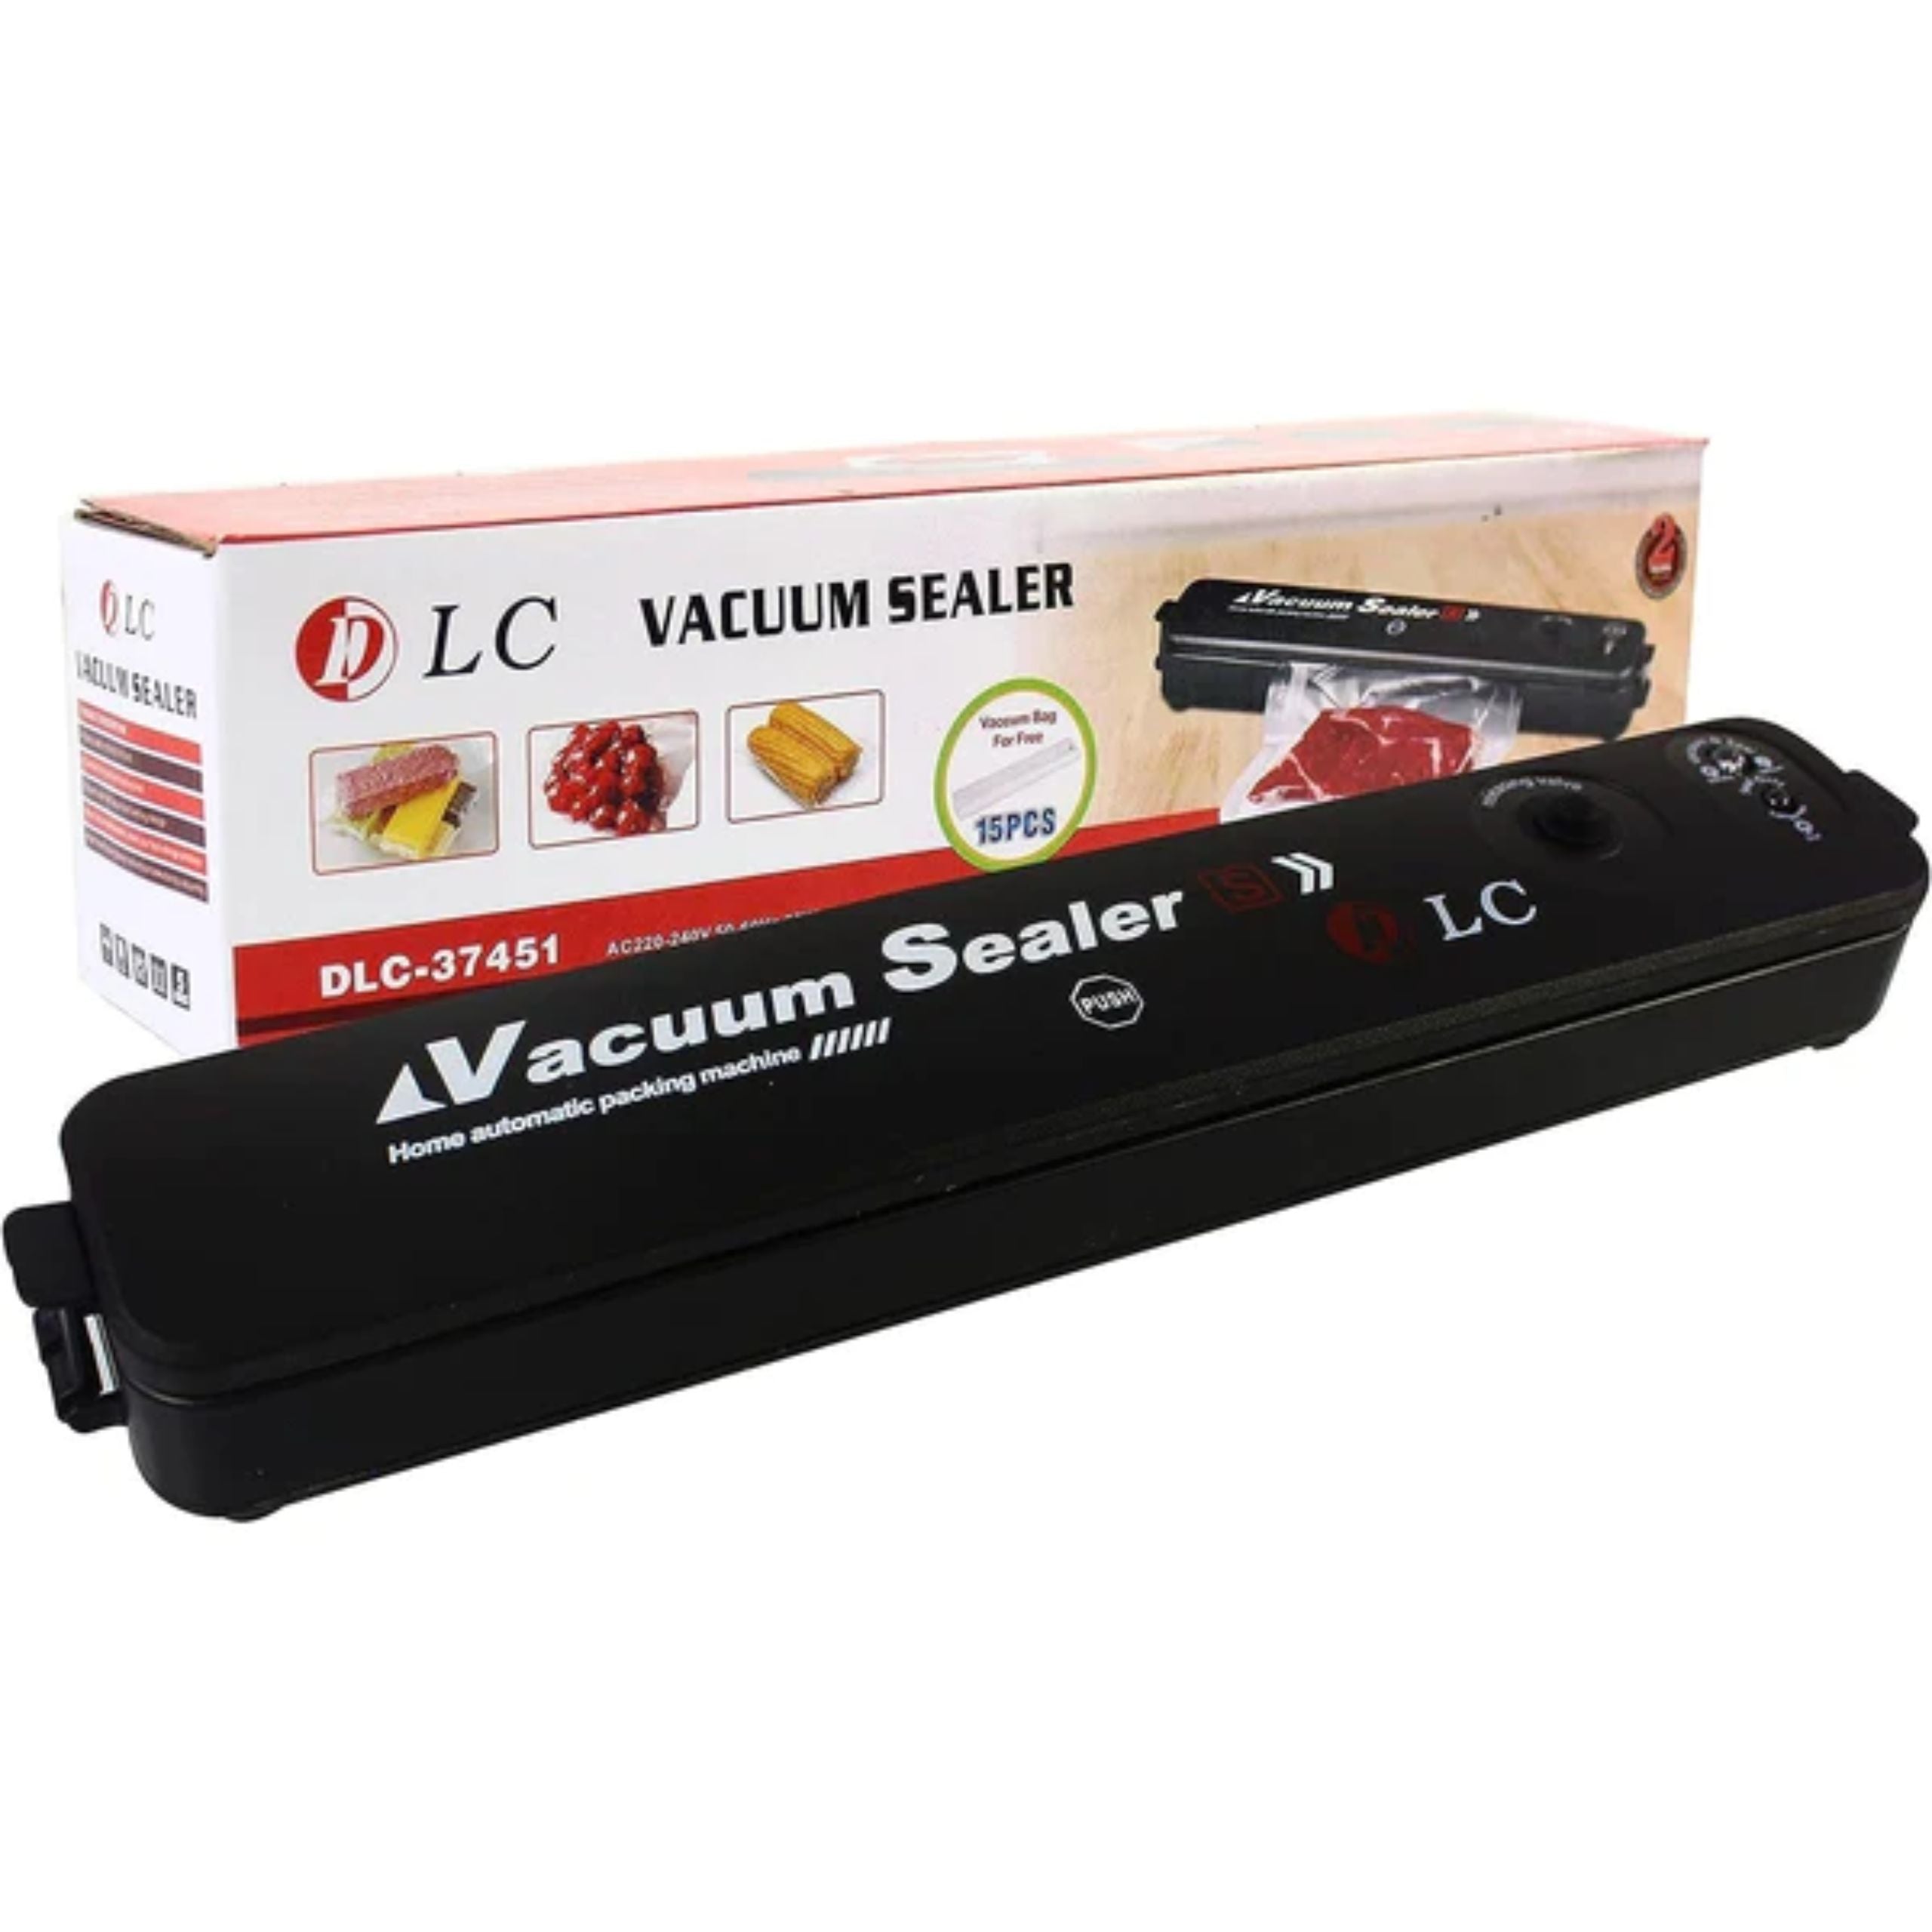 DLC Vaccum Sealer DLC-37451 - Black